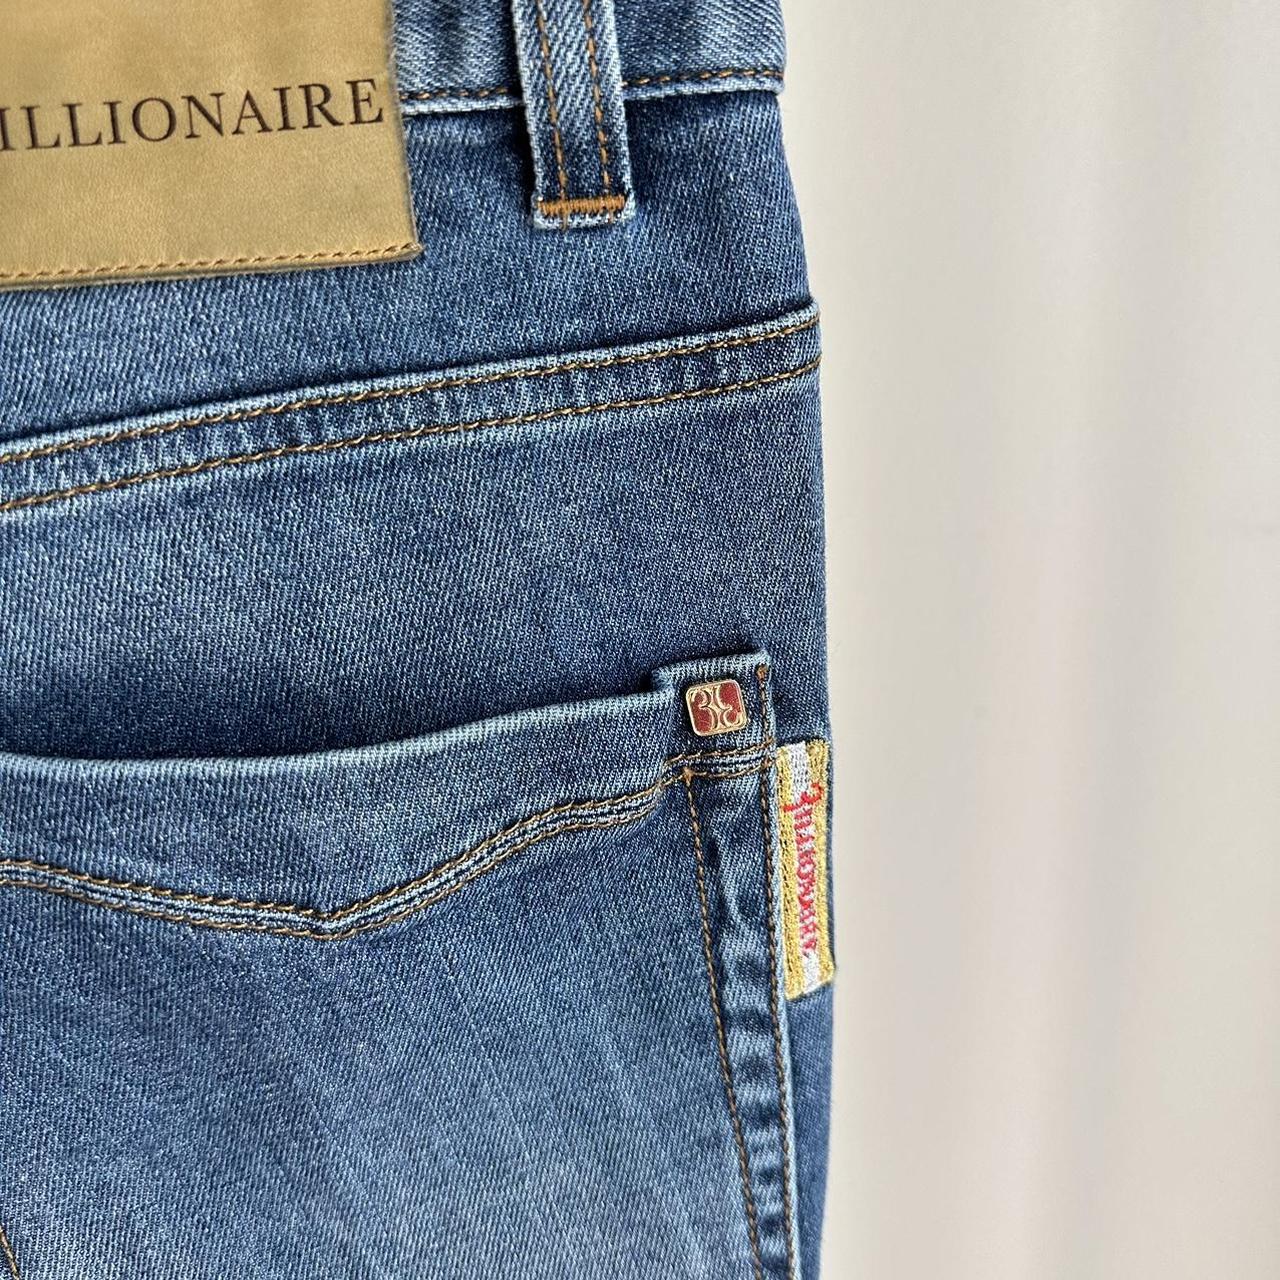 Billionaire Men's Blue Jeans (3)